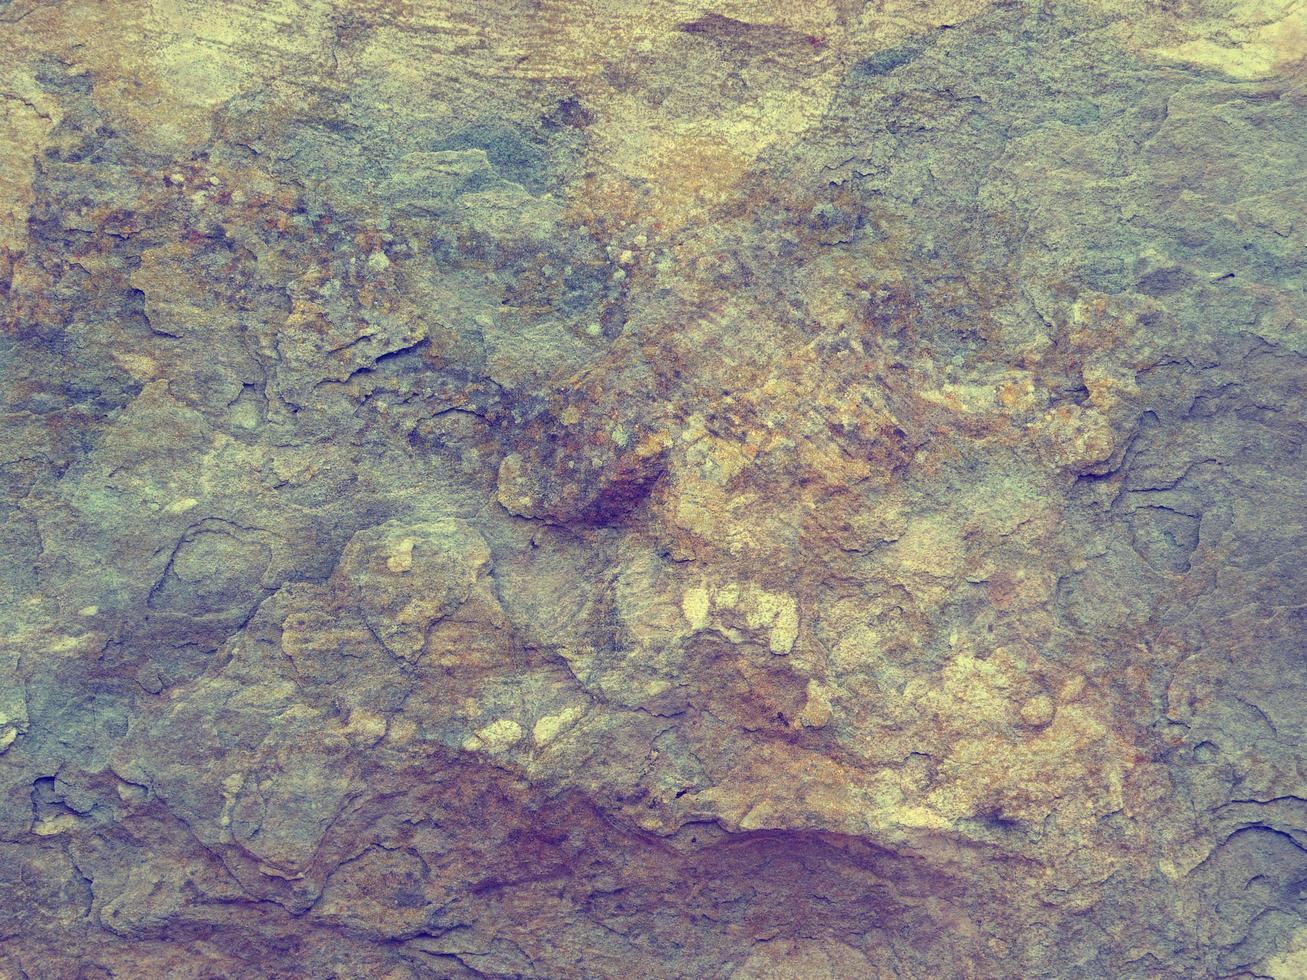 textura de piedra al aire libre foto